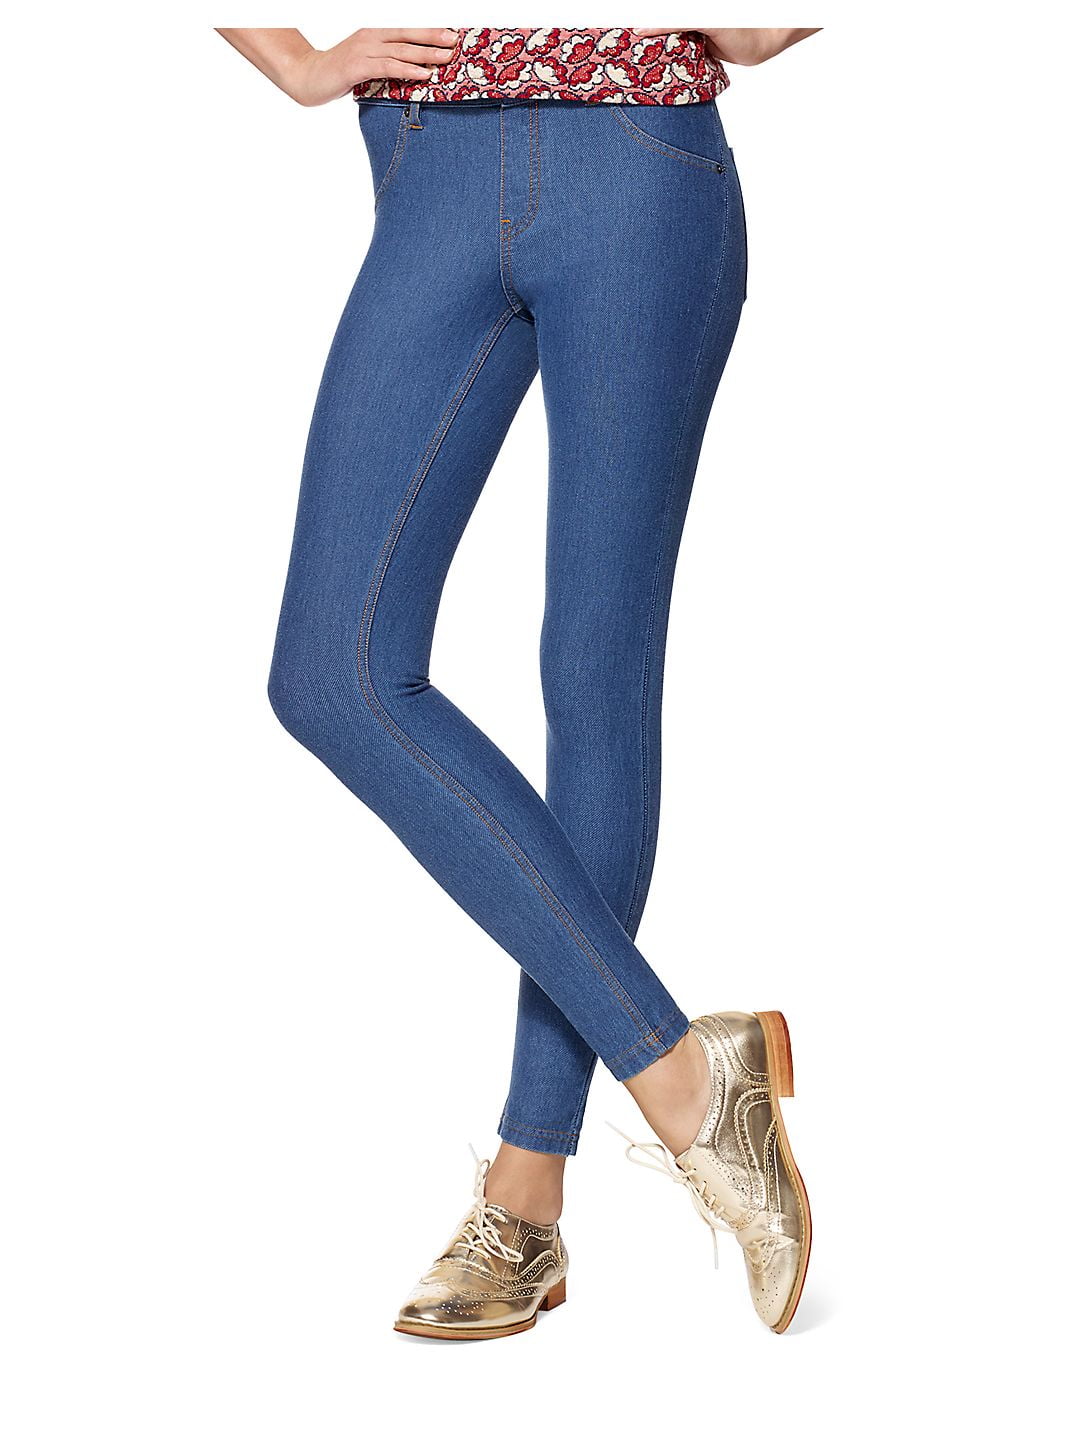 Buy HUEWomen's Jeggings & Tunic - Essential Denim Leggings - Stretchy Jeans  for Women - V Neck Legging Tee Online at desertcartCyprus